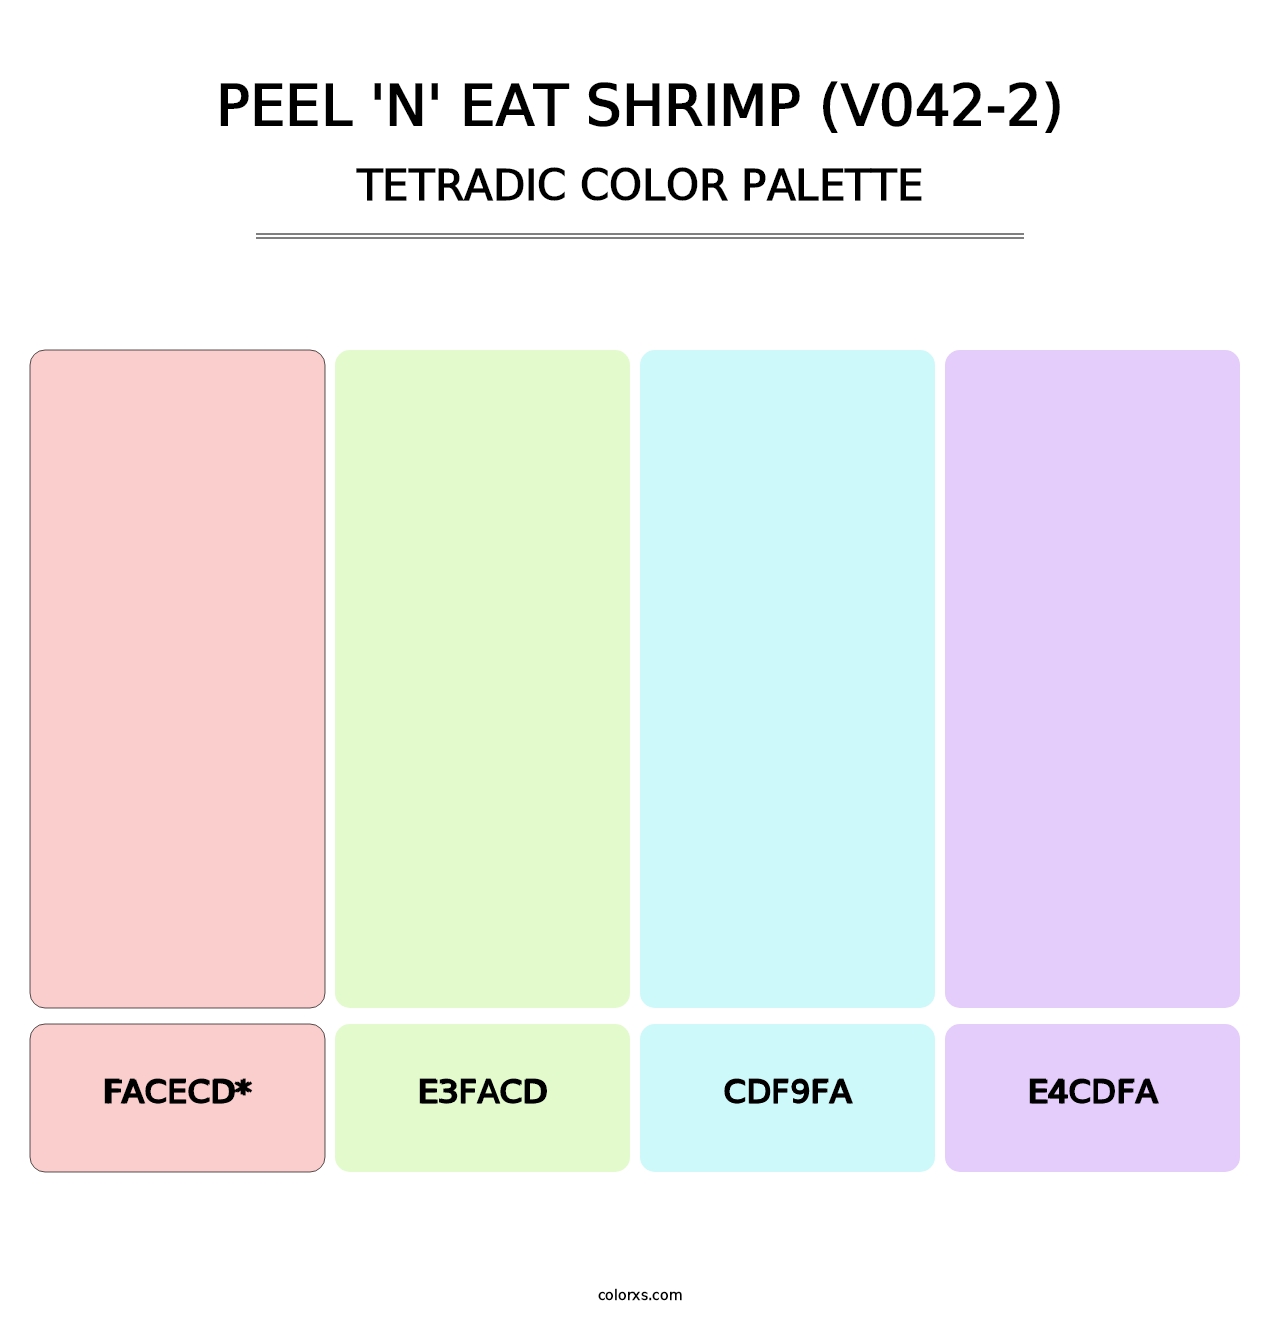 Peel 'n' Eat Shrimp (V042-2) - Tetradic Color Palette